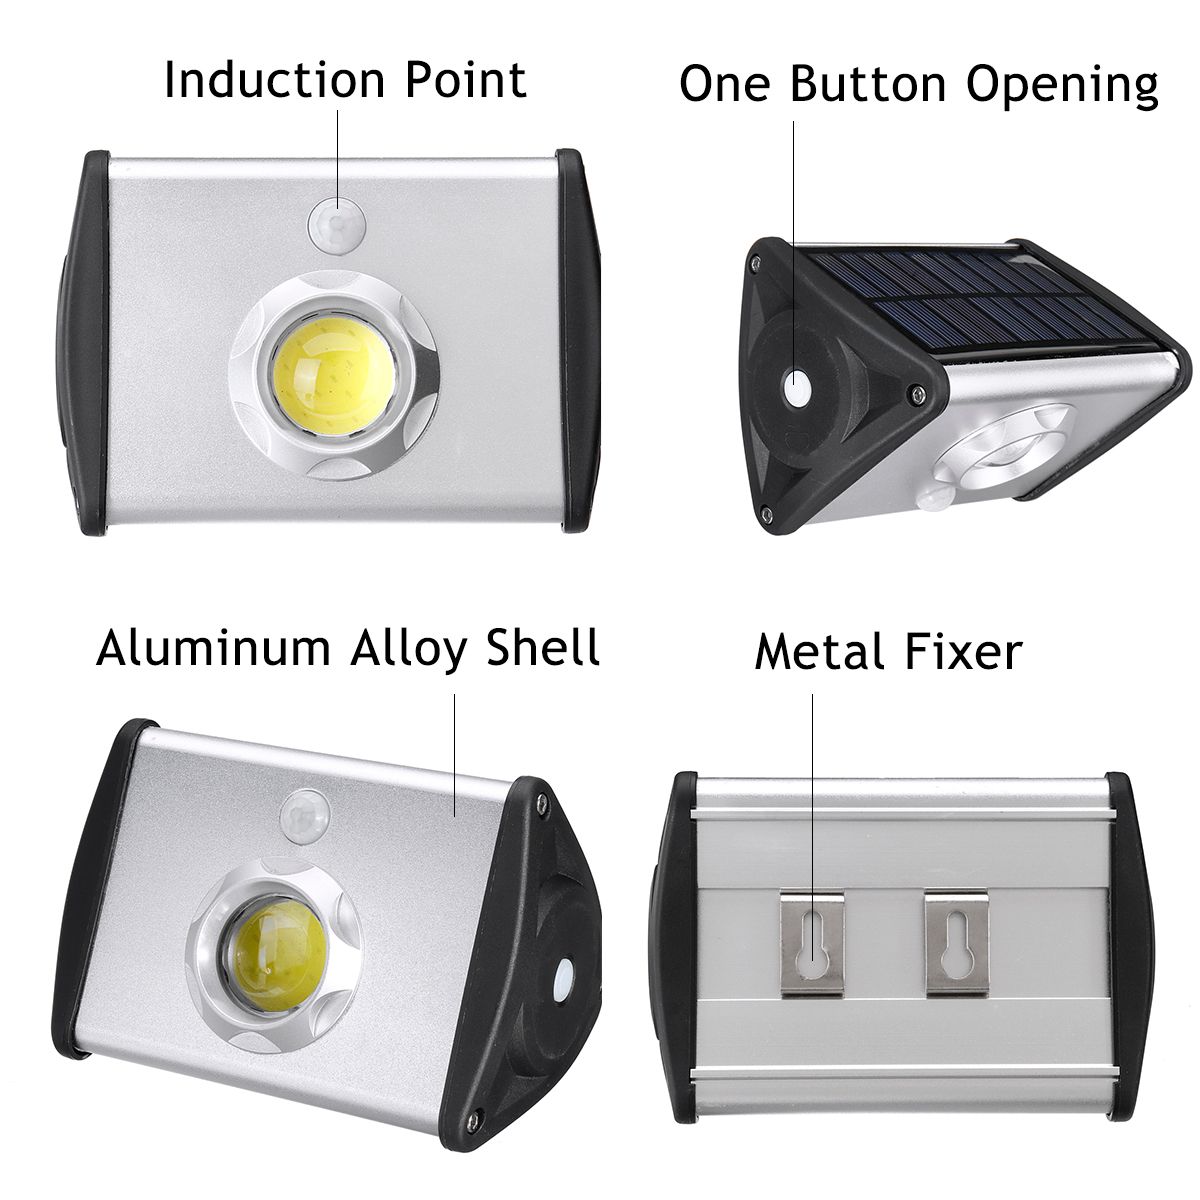 Solar-Power-COB-Motion-Sensor-Garden-Security-Lamp-Outdoor-Waterproof-Light-1651956